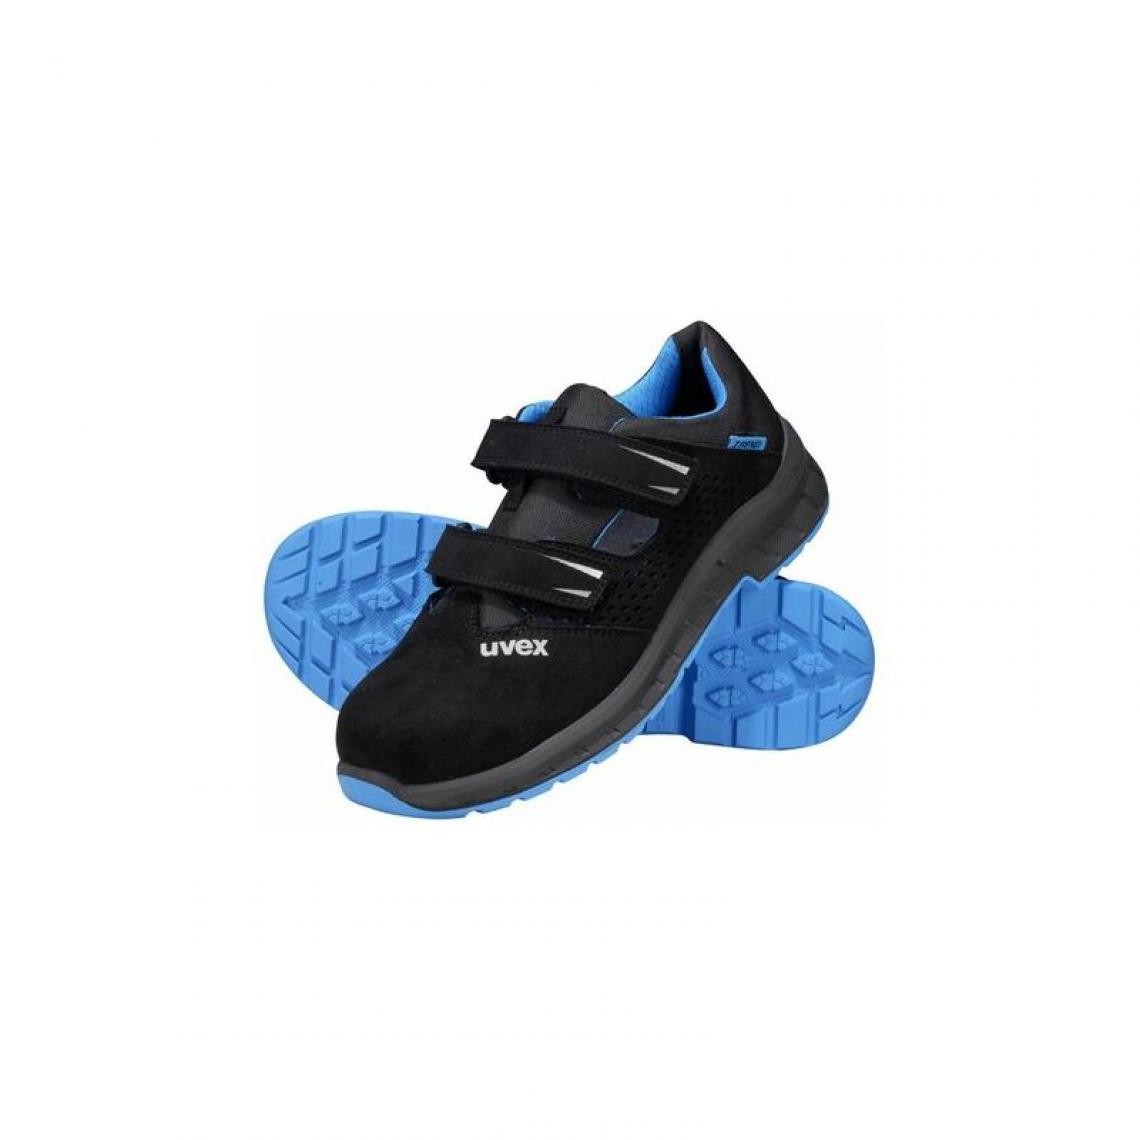 Uvex - uvex 2 trend Chaussure de sécurité S1P, pointure 42, noir/ () - Equipement de Protection Individuelle